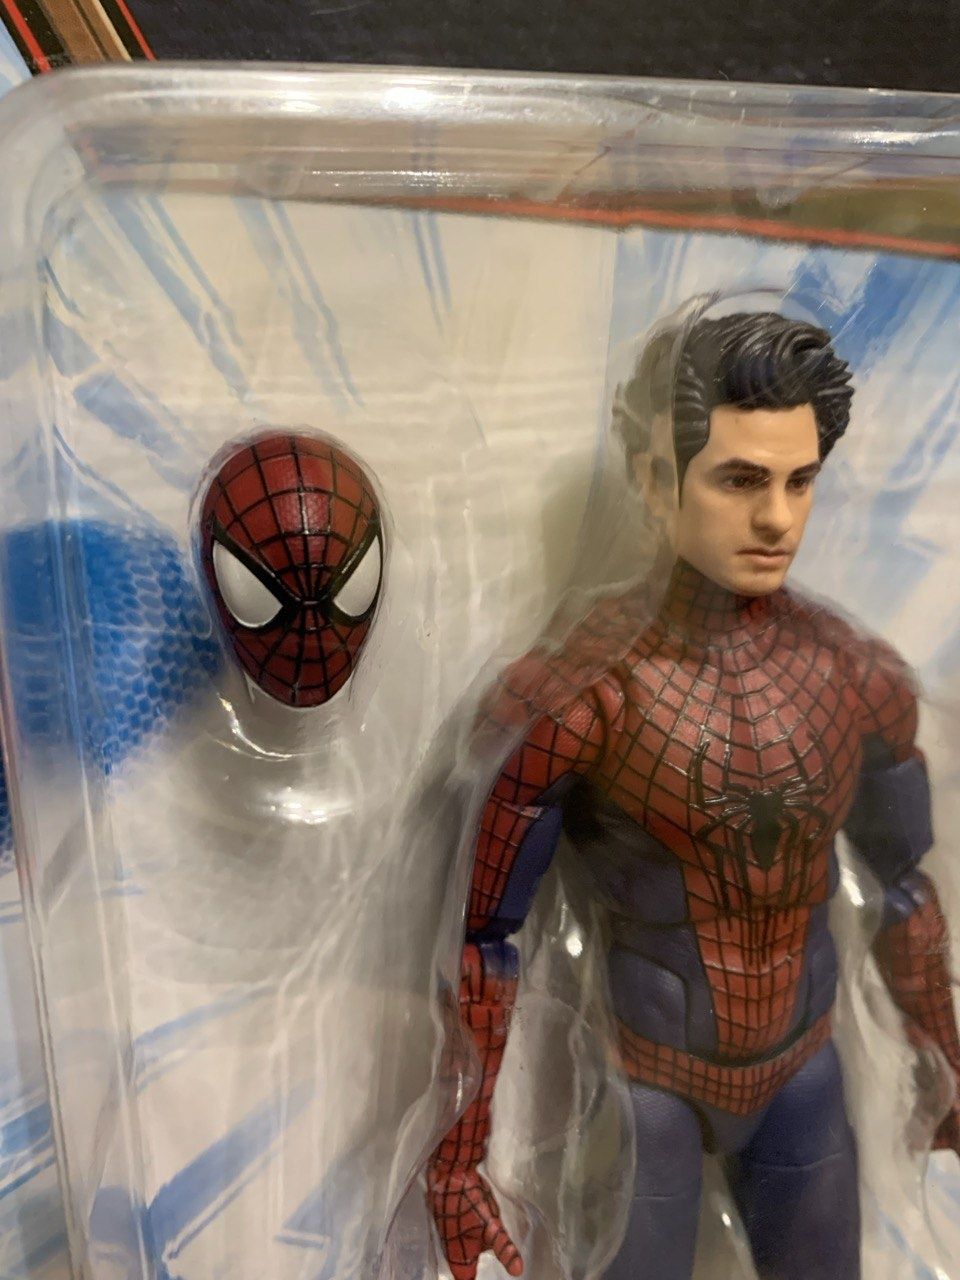 Фігурка Неймовірна Людина-павук The Amazing Spider-Man 2 Marvel Legend